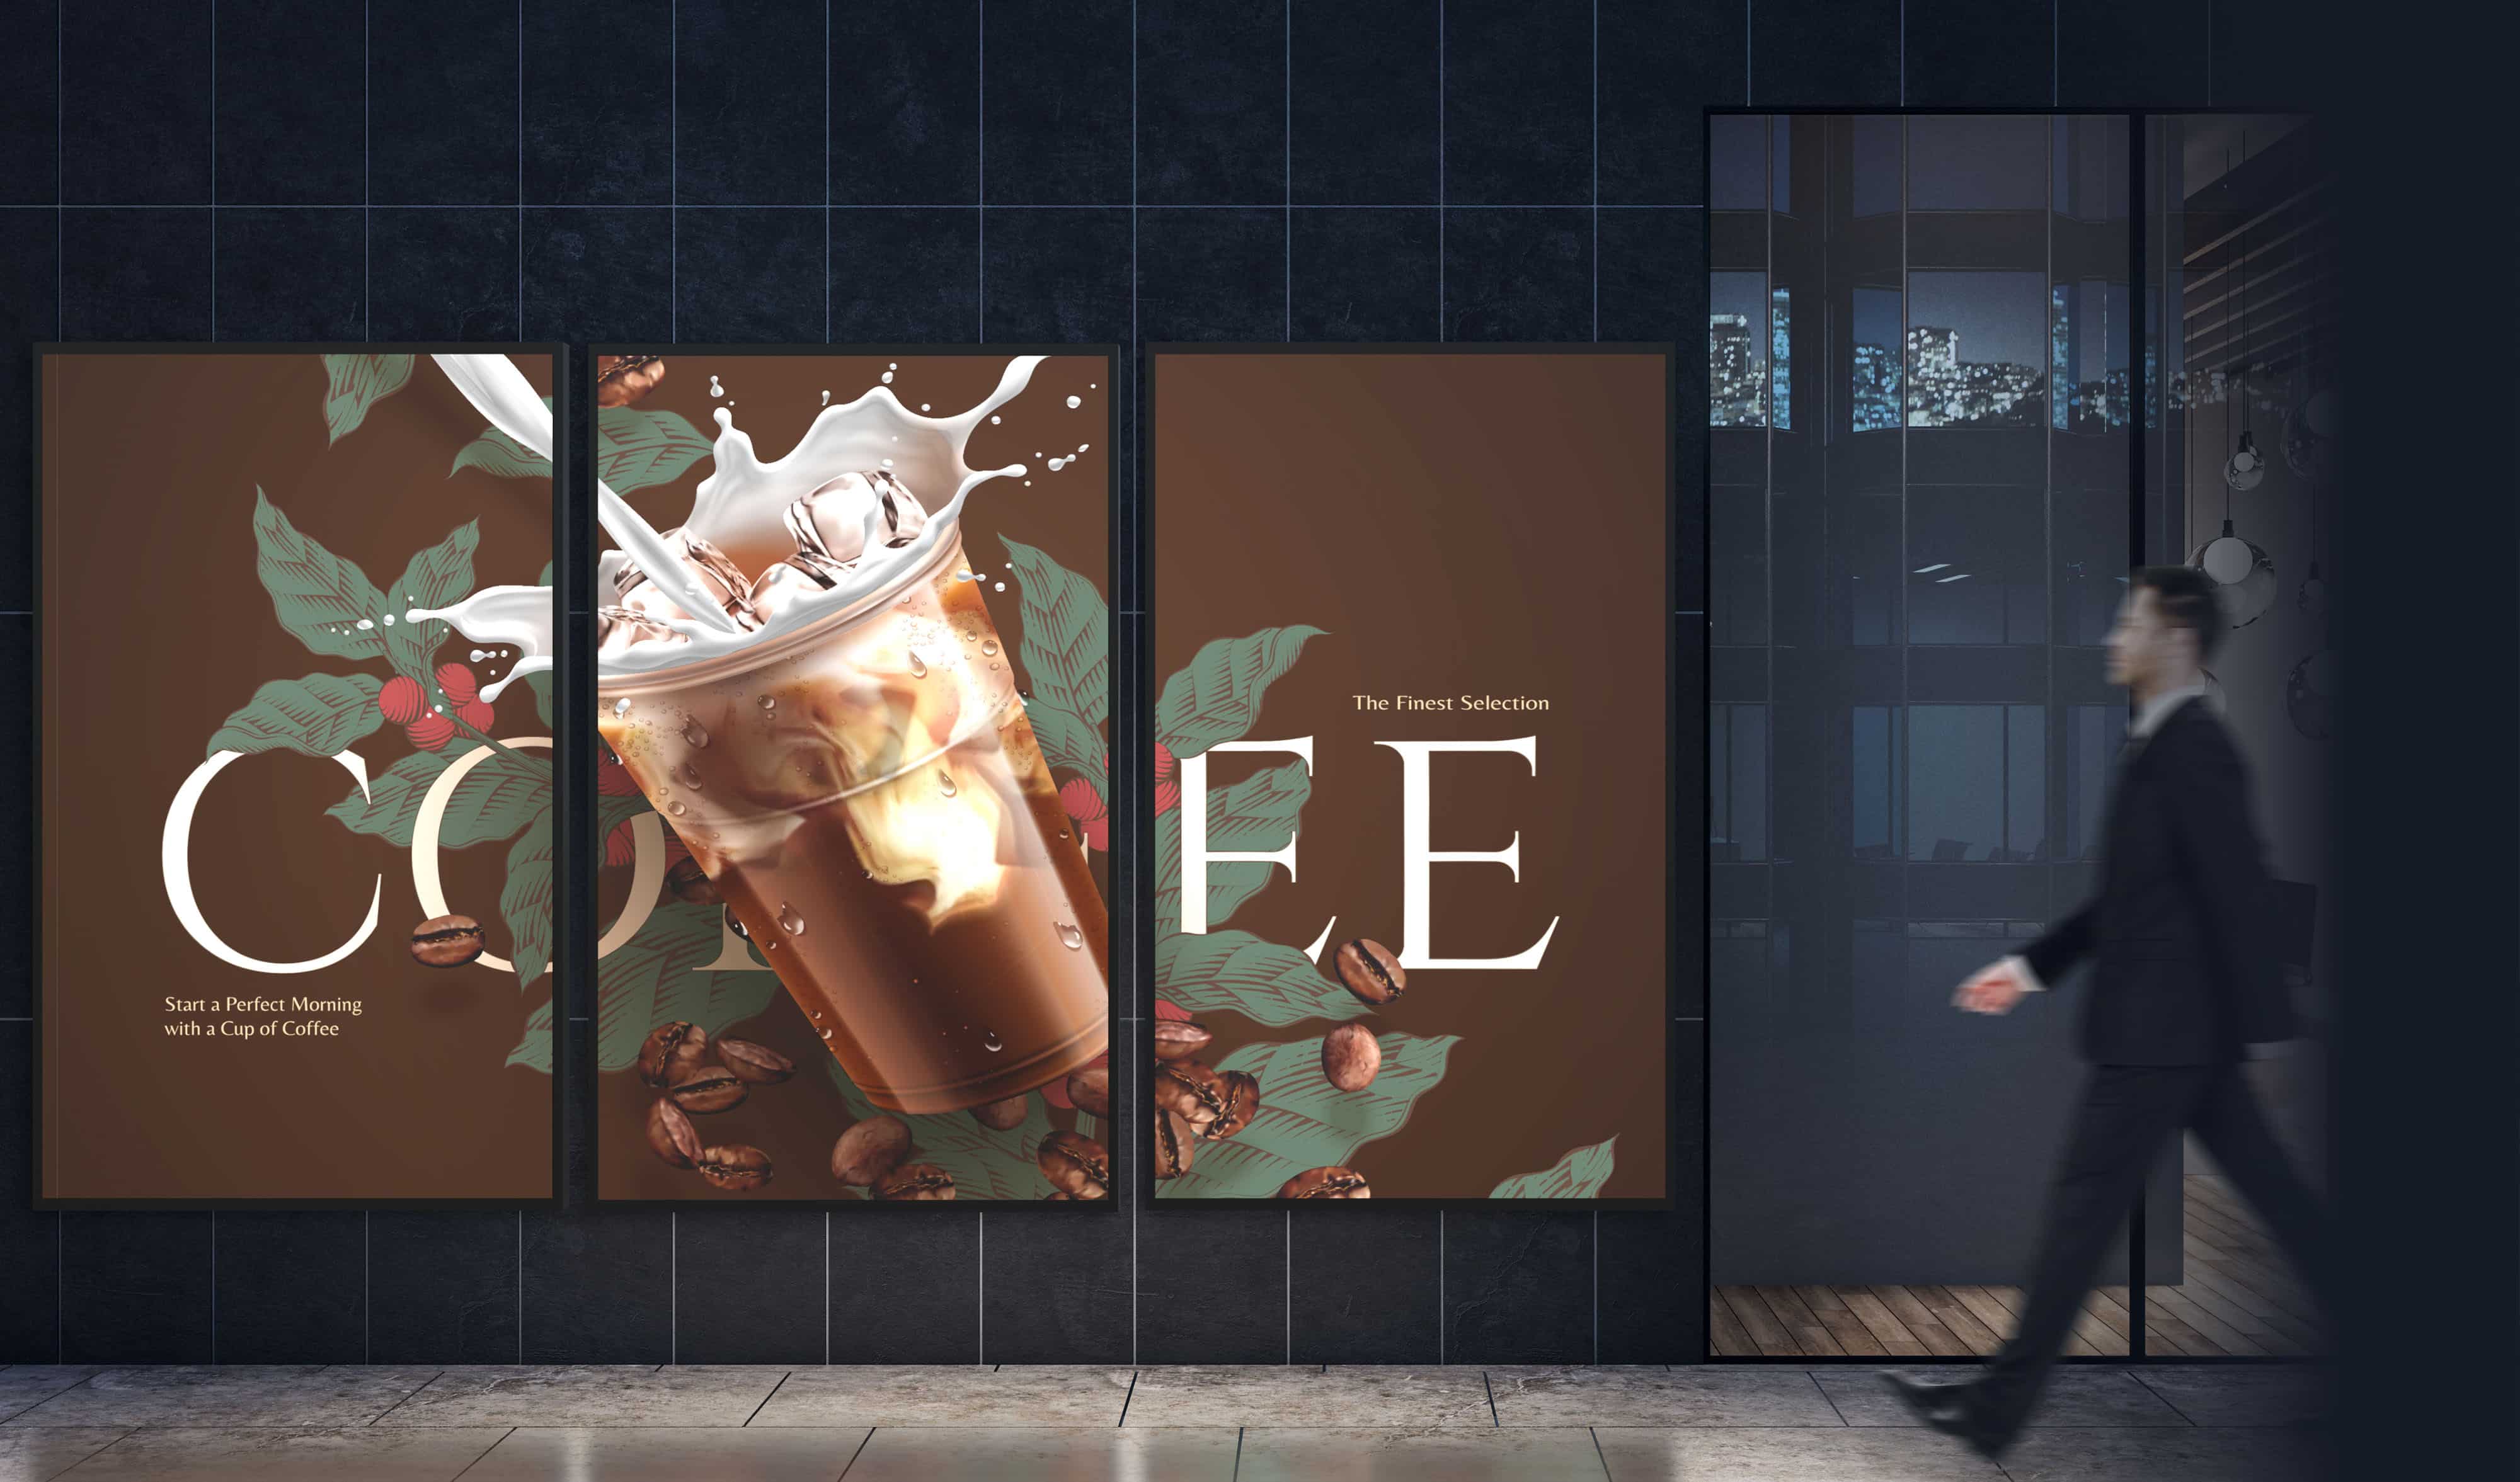 Ein Geschäftsmann geht an einer Digital Signage-Wand vorbei, die aus drei Displays der N-Serie besteht und eine einzige Werbung für ein Kaffeegetränk auf allen drei Displays anzeigt.